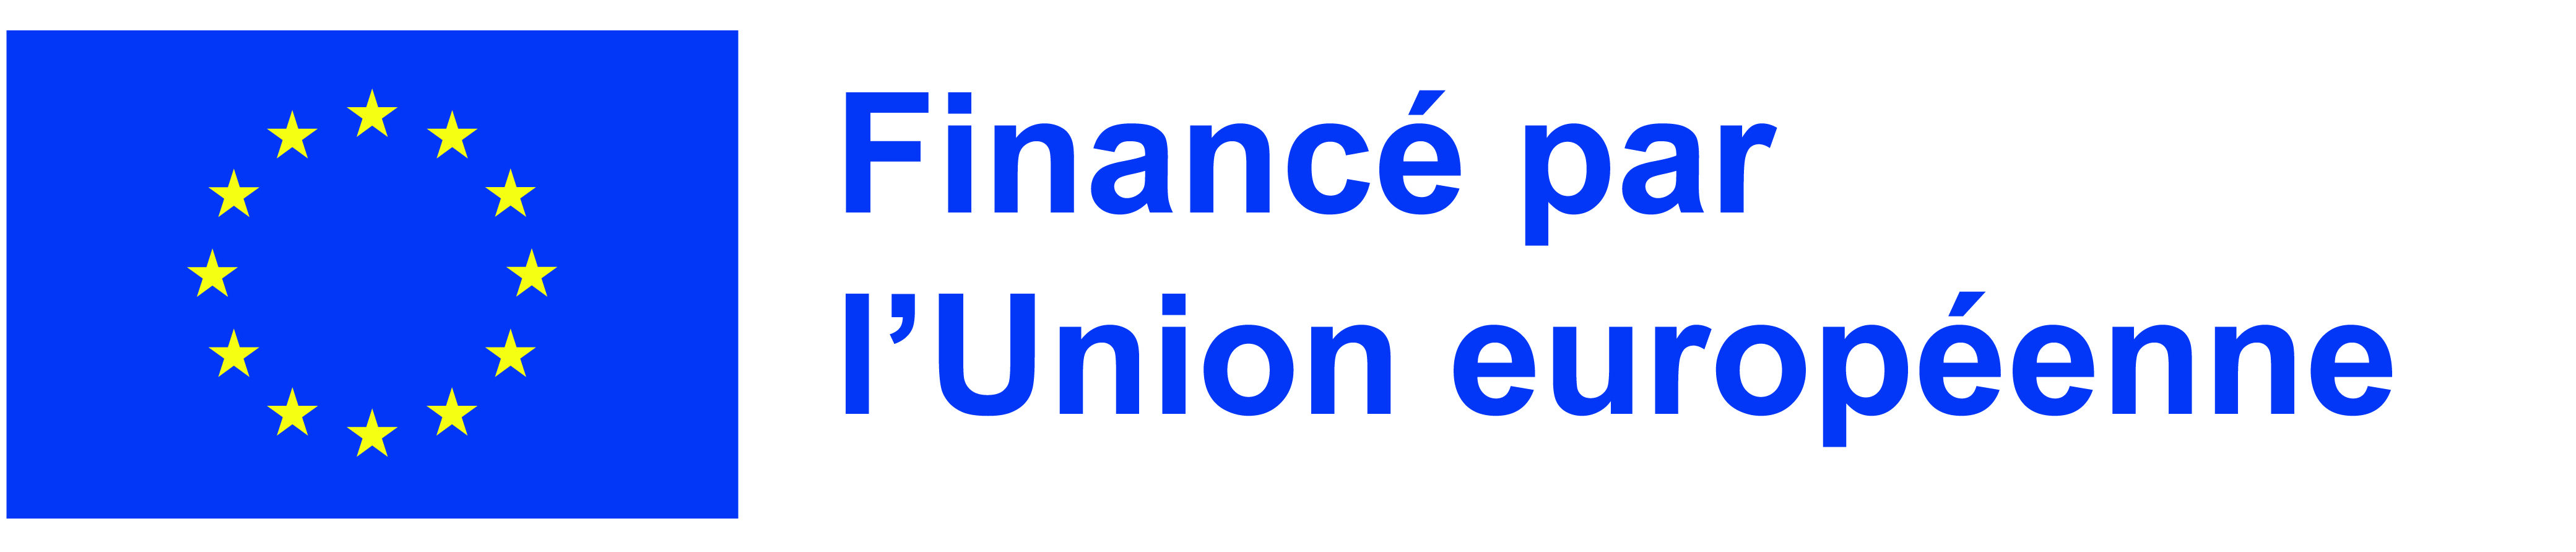 FR-Financé par l’Union européenne-POS.jpg